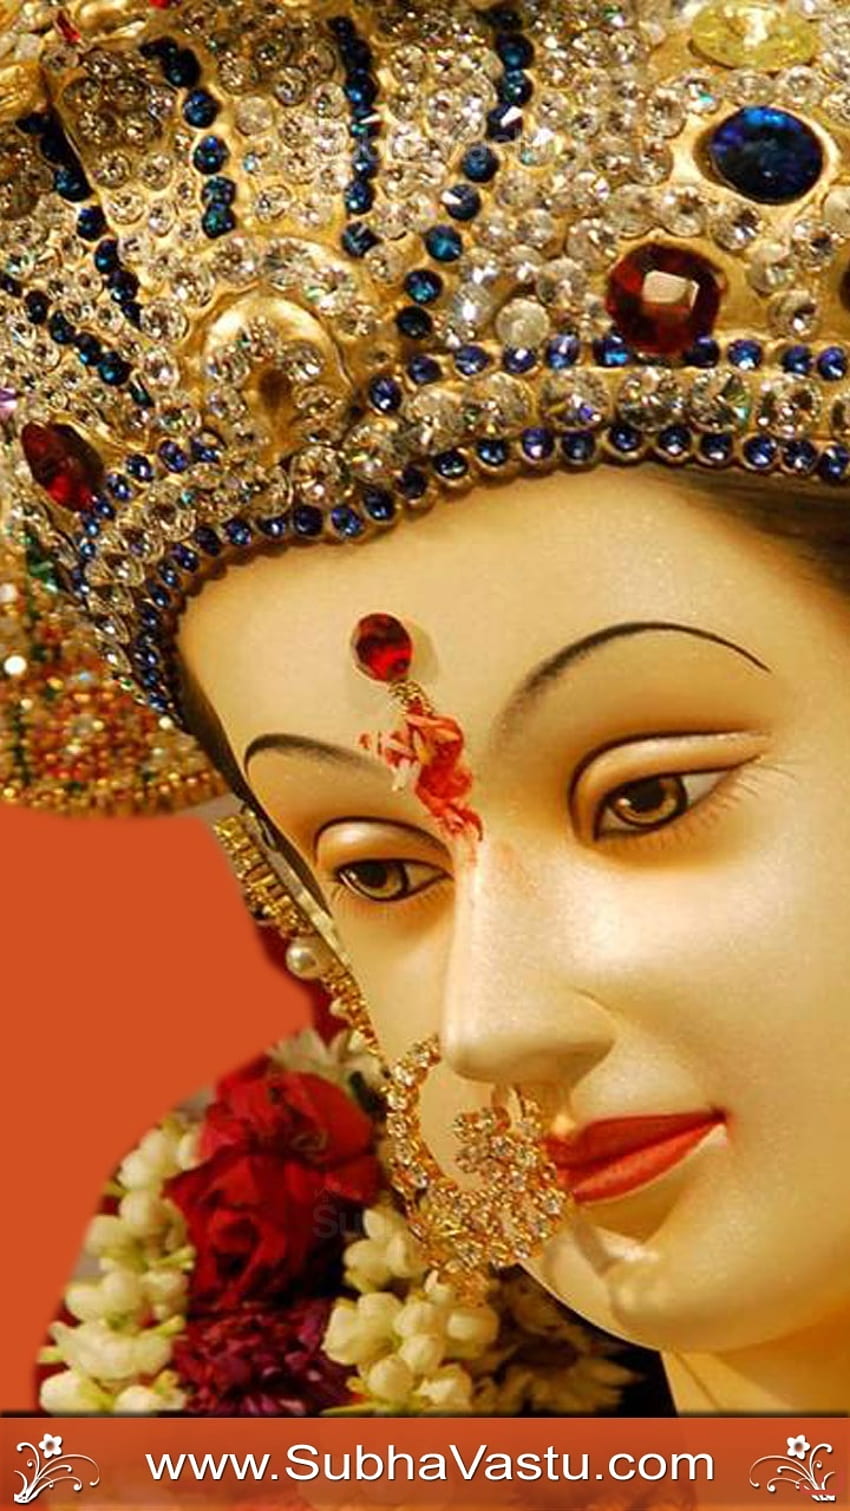 Chaitra Navratri - Maa Durga Hd Wallpaper 1080p Transparent PNG - 2170x1245  - Free Download on NicePNG